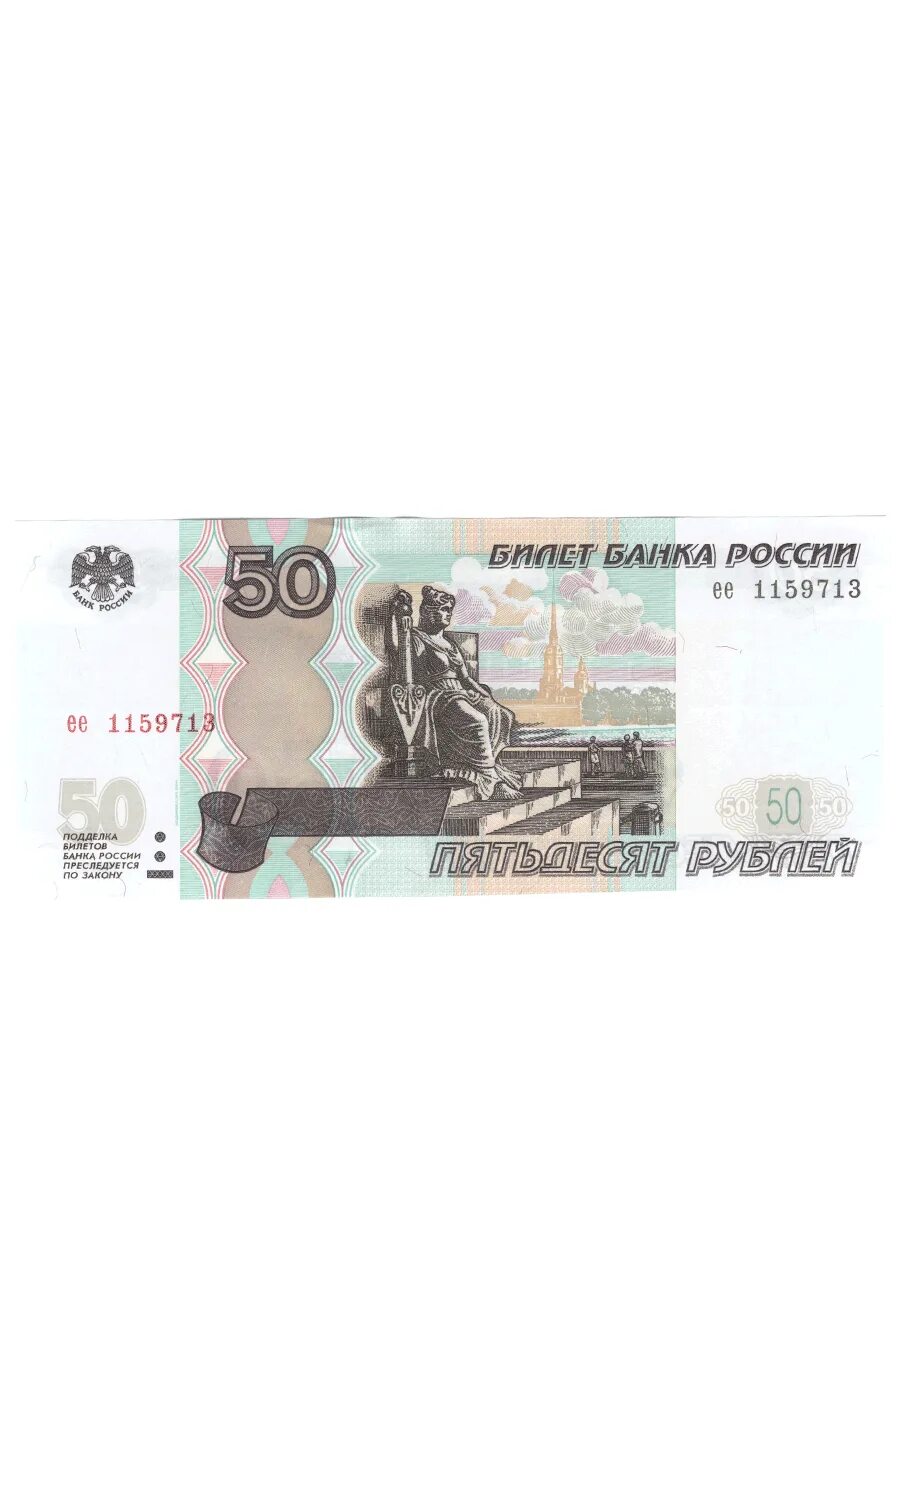 50 рублей 500 рублей. Купюра 50 рублей 1997 года. Купюра 50 рублей 1997 без модификации. 50rubli. Банкнота 50 рублей 1997 года.